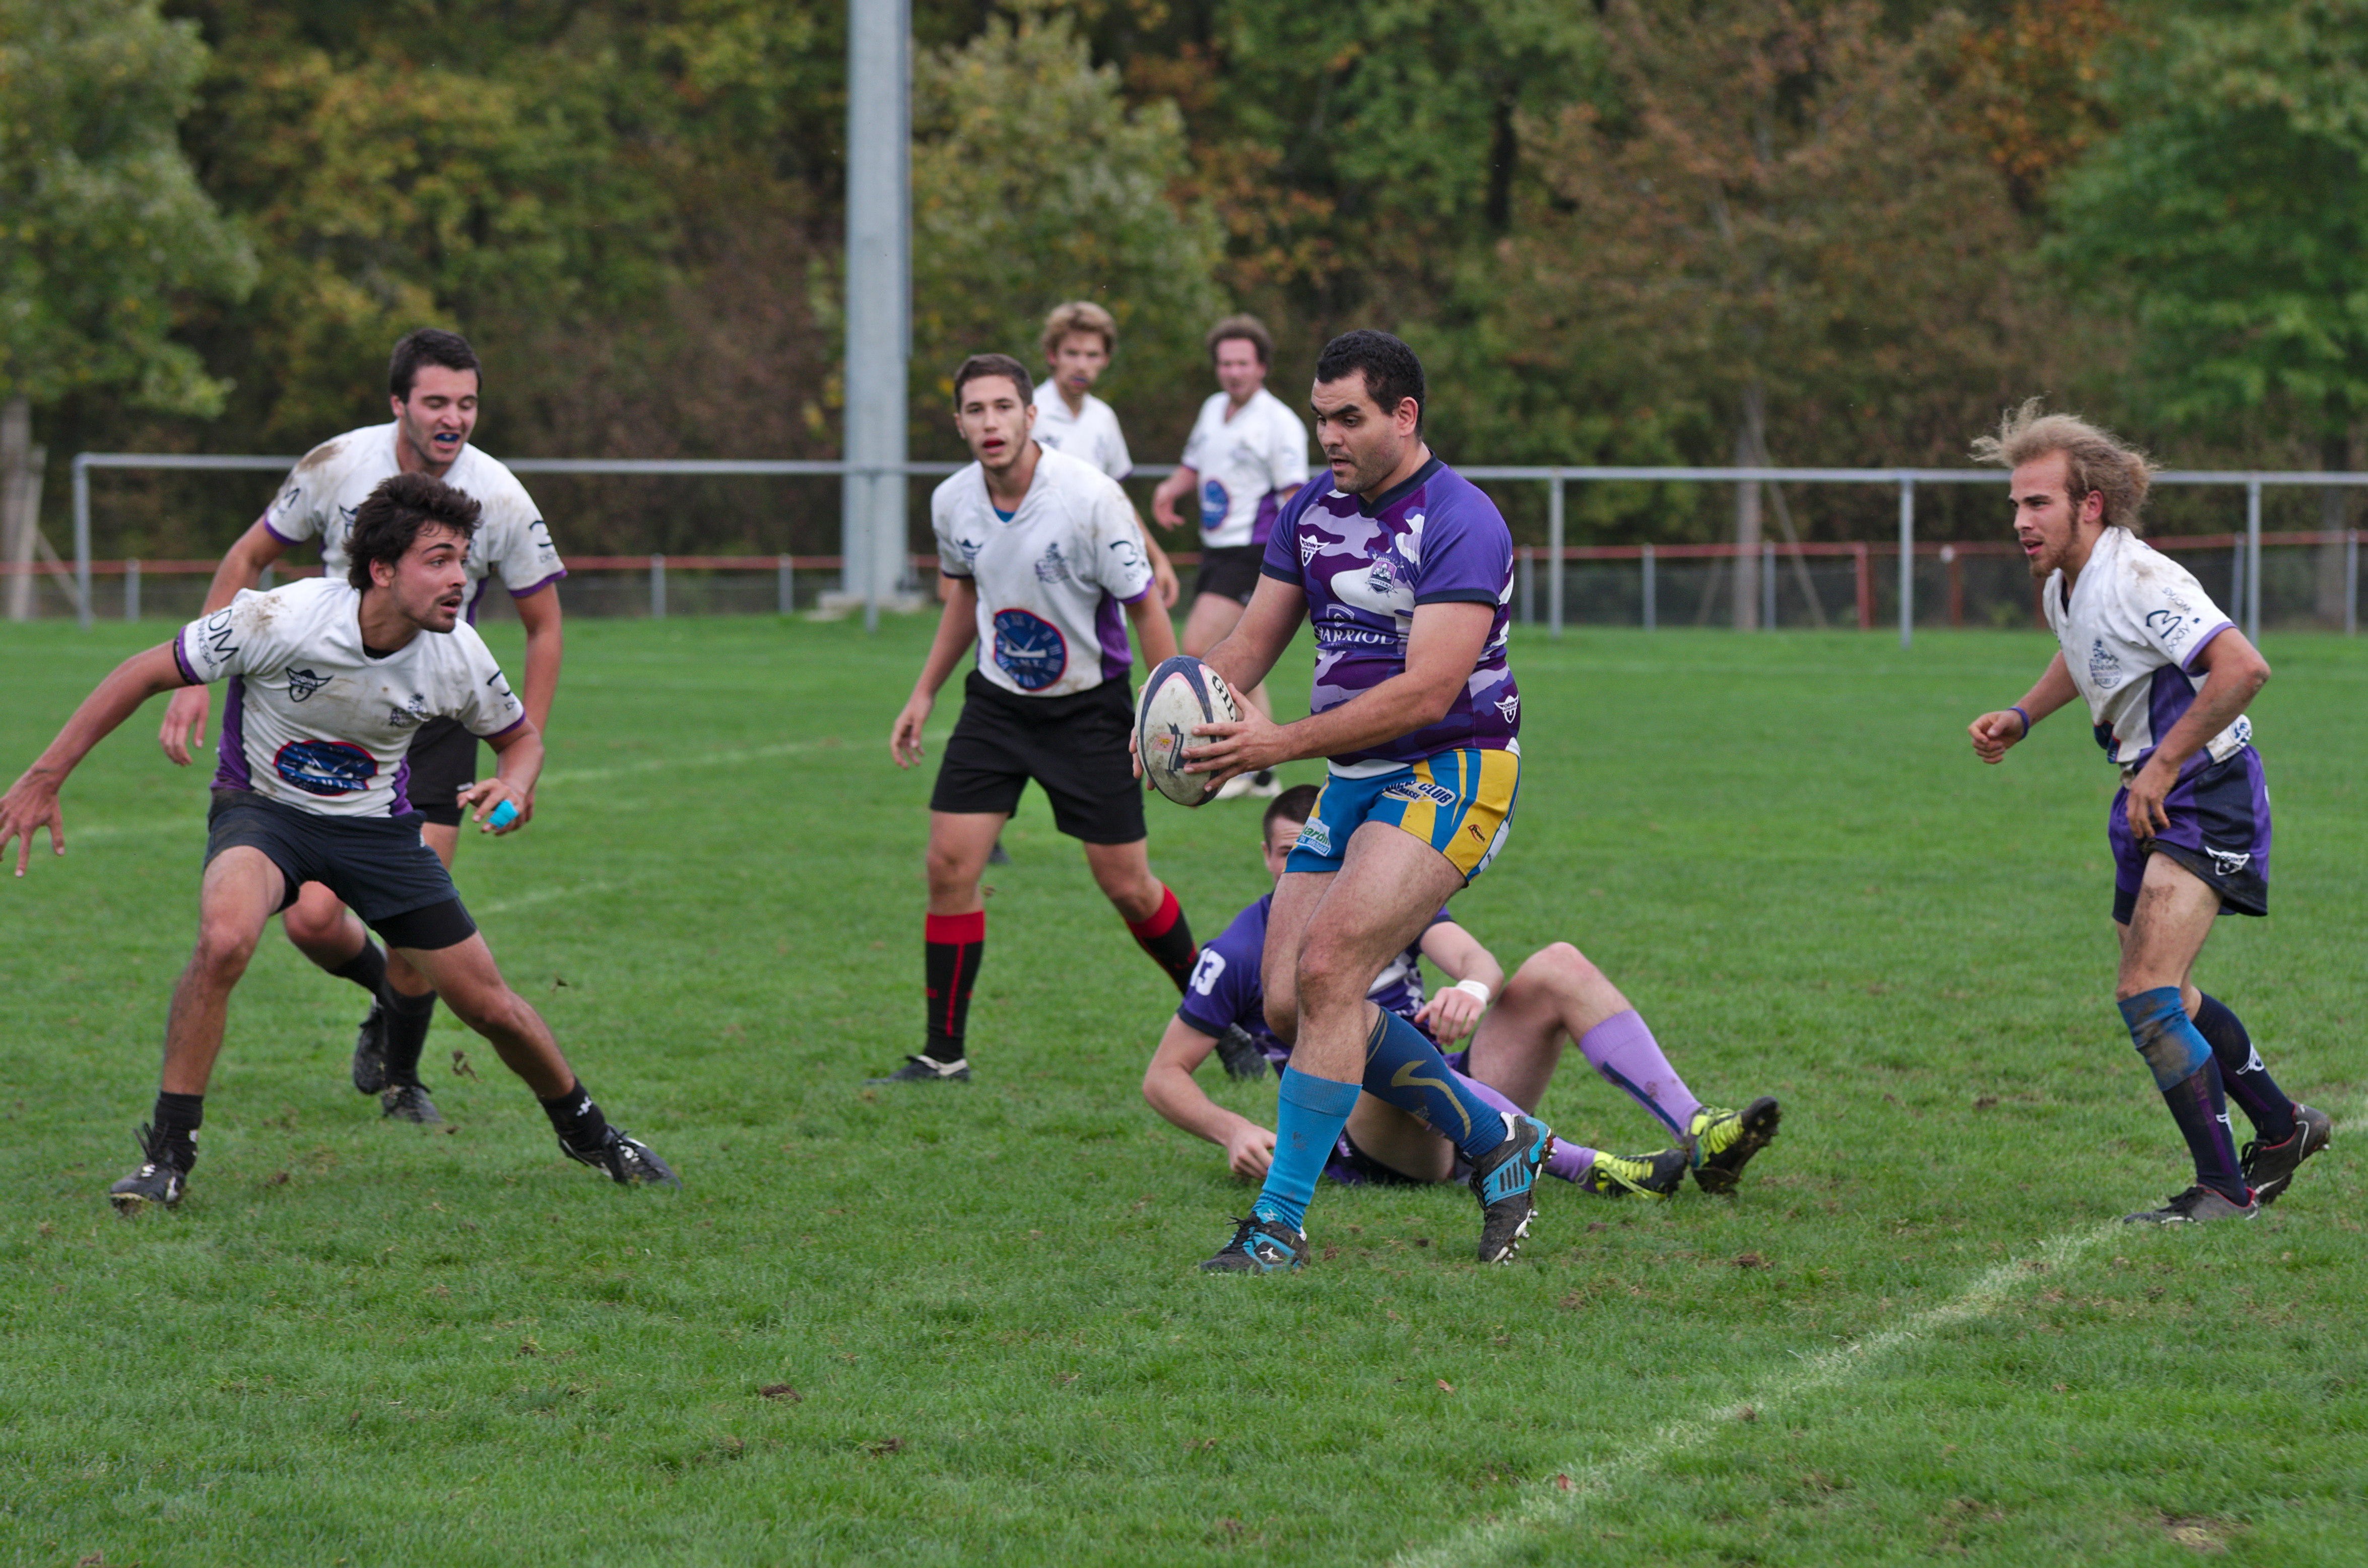 Tournoi de rugby à 7 - 20141012 - Genève - 09